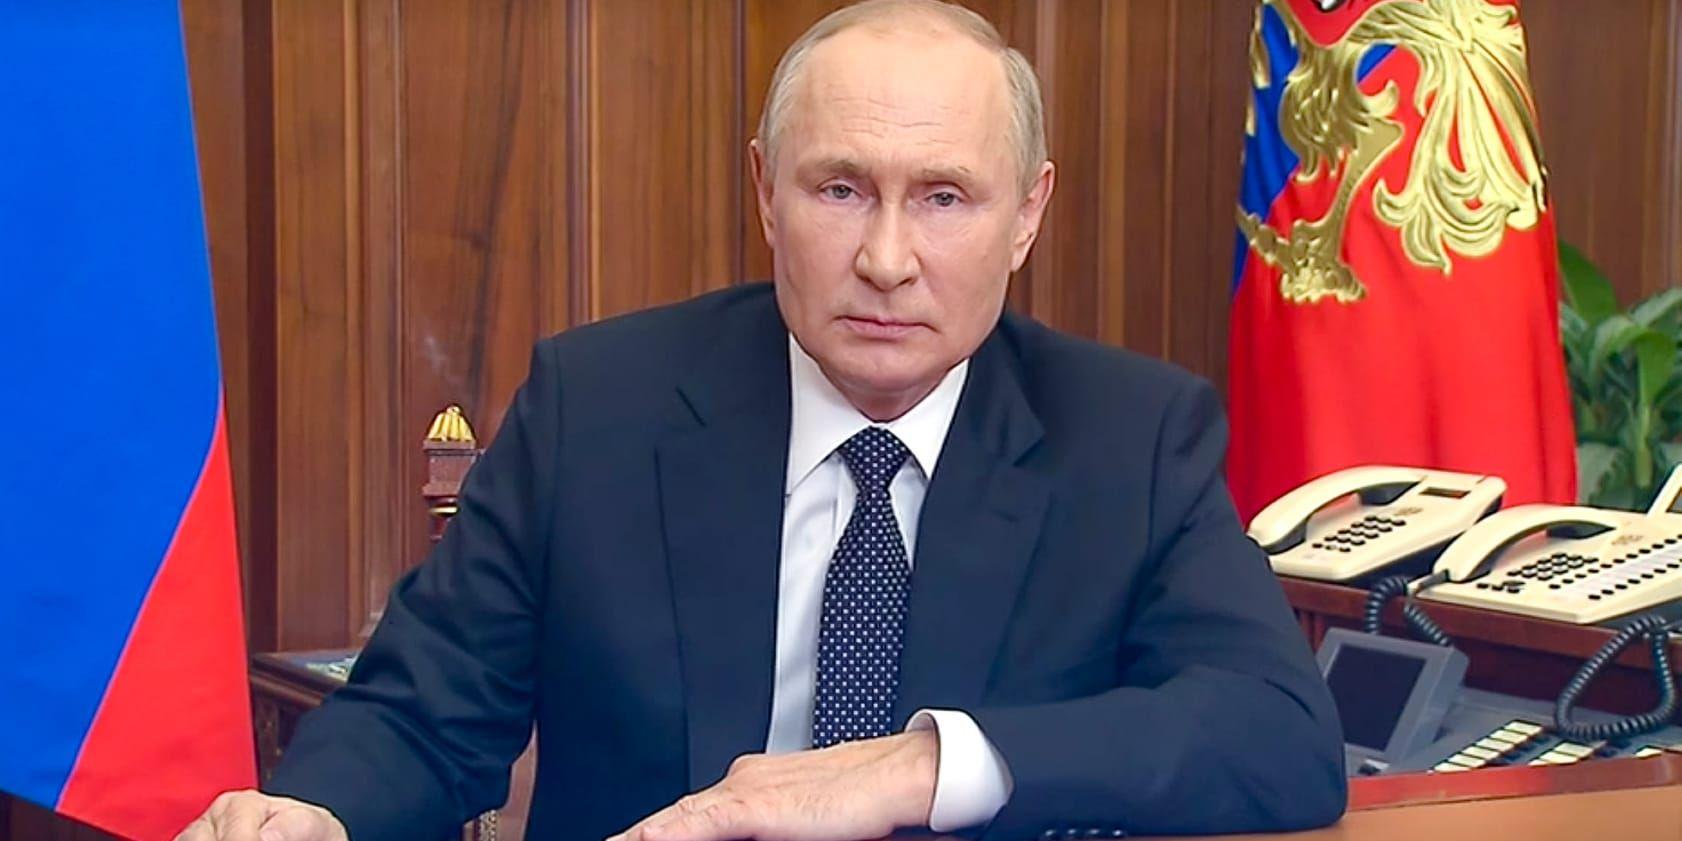 Rysslands president Vladimir Putins tal, som tolkas som eskalerande, den 21 september.